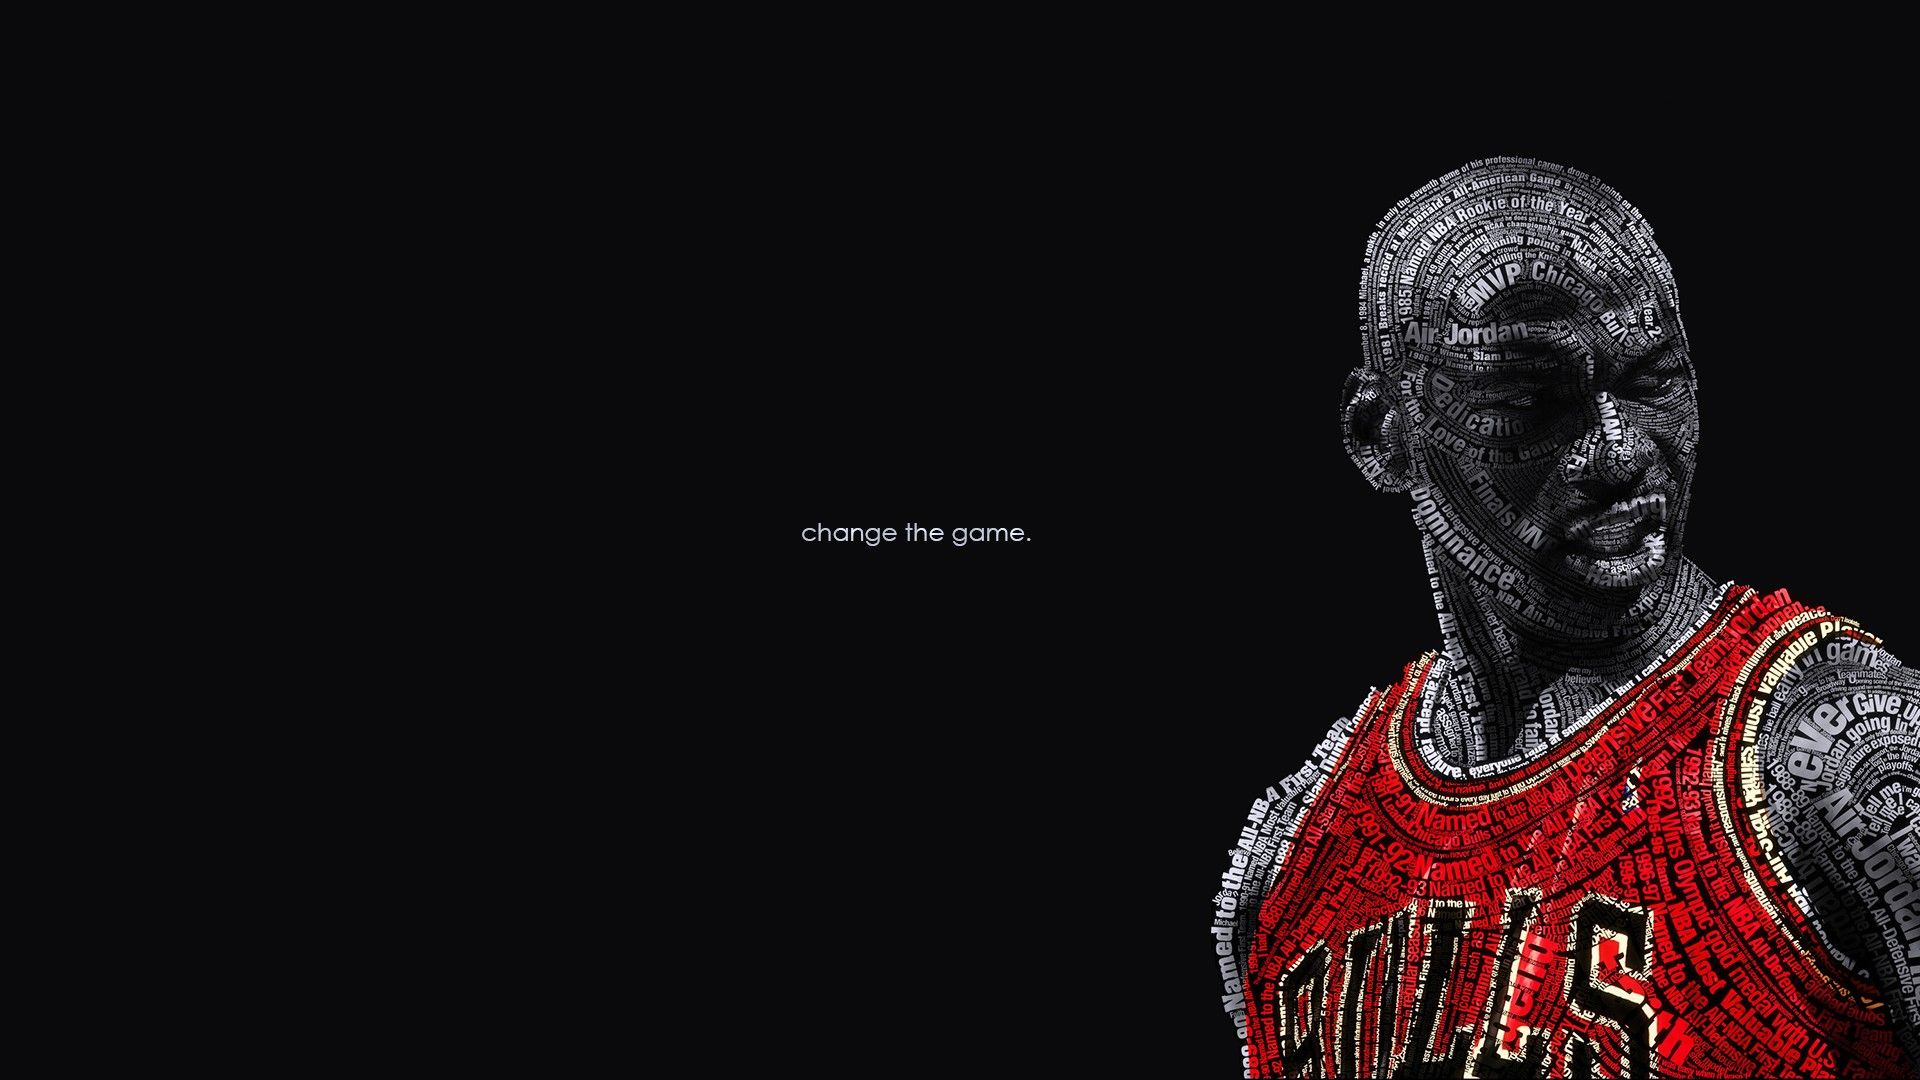 1920x1080 Michael Jordan wallpaper for desktop. Michael